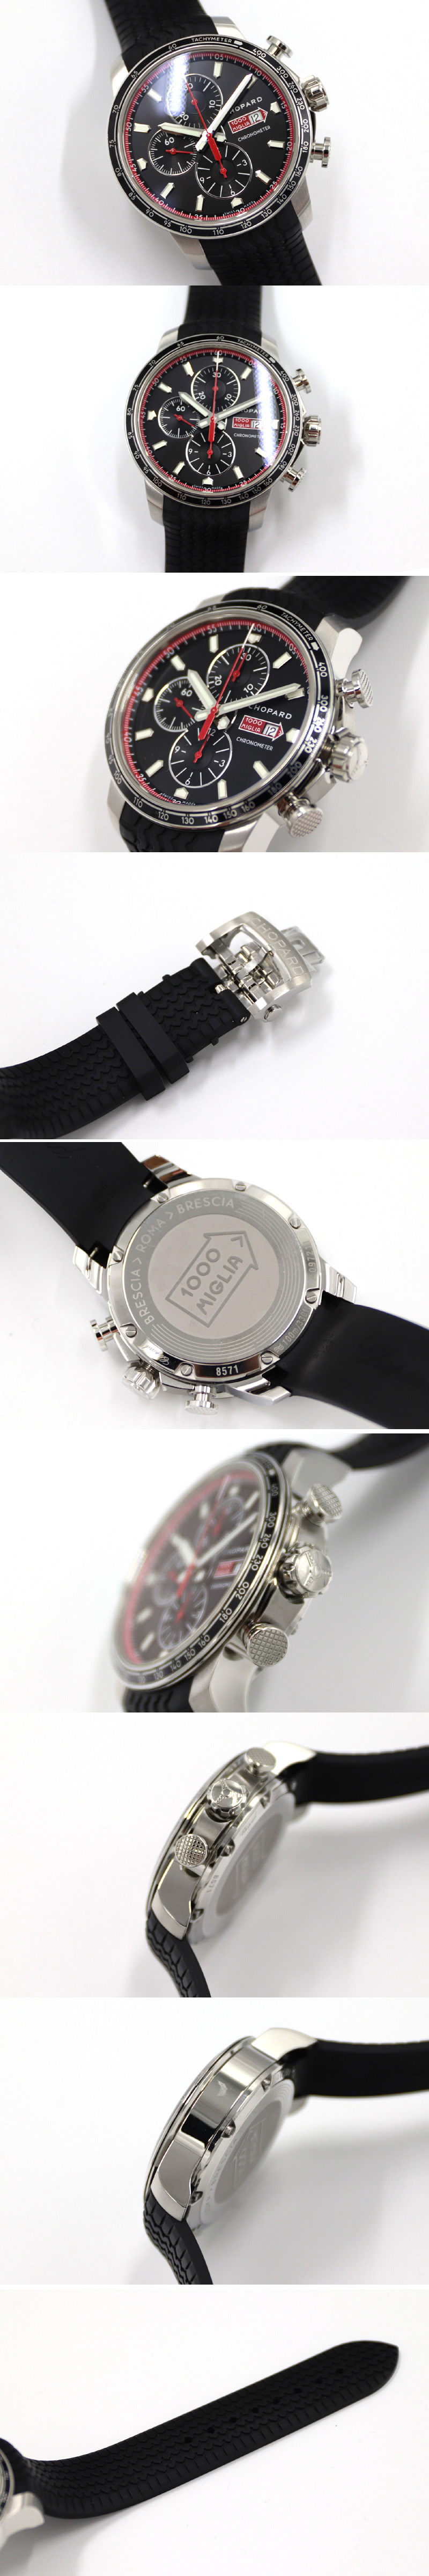 Replica Chopard Watches